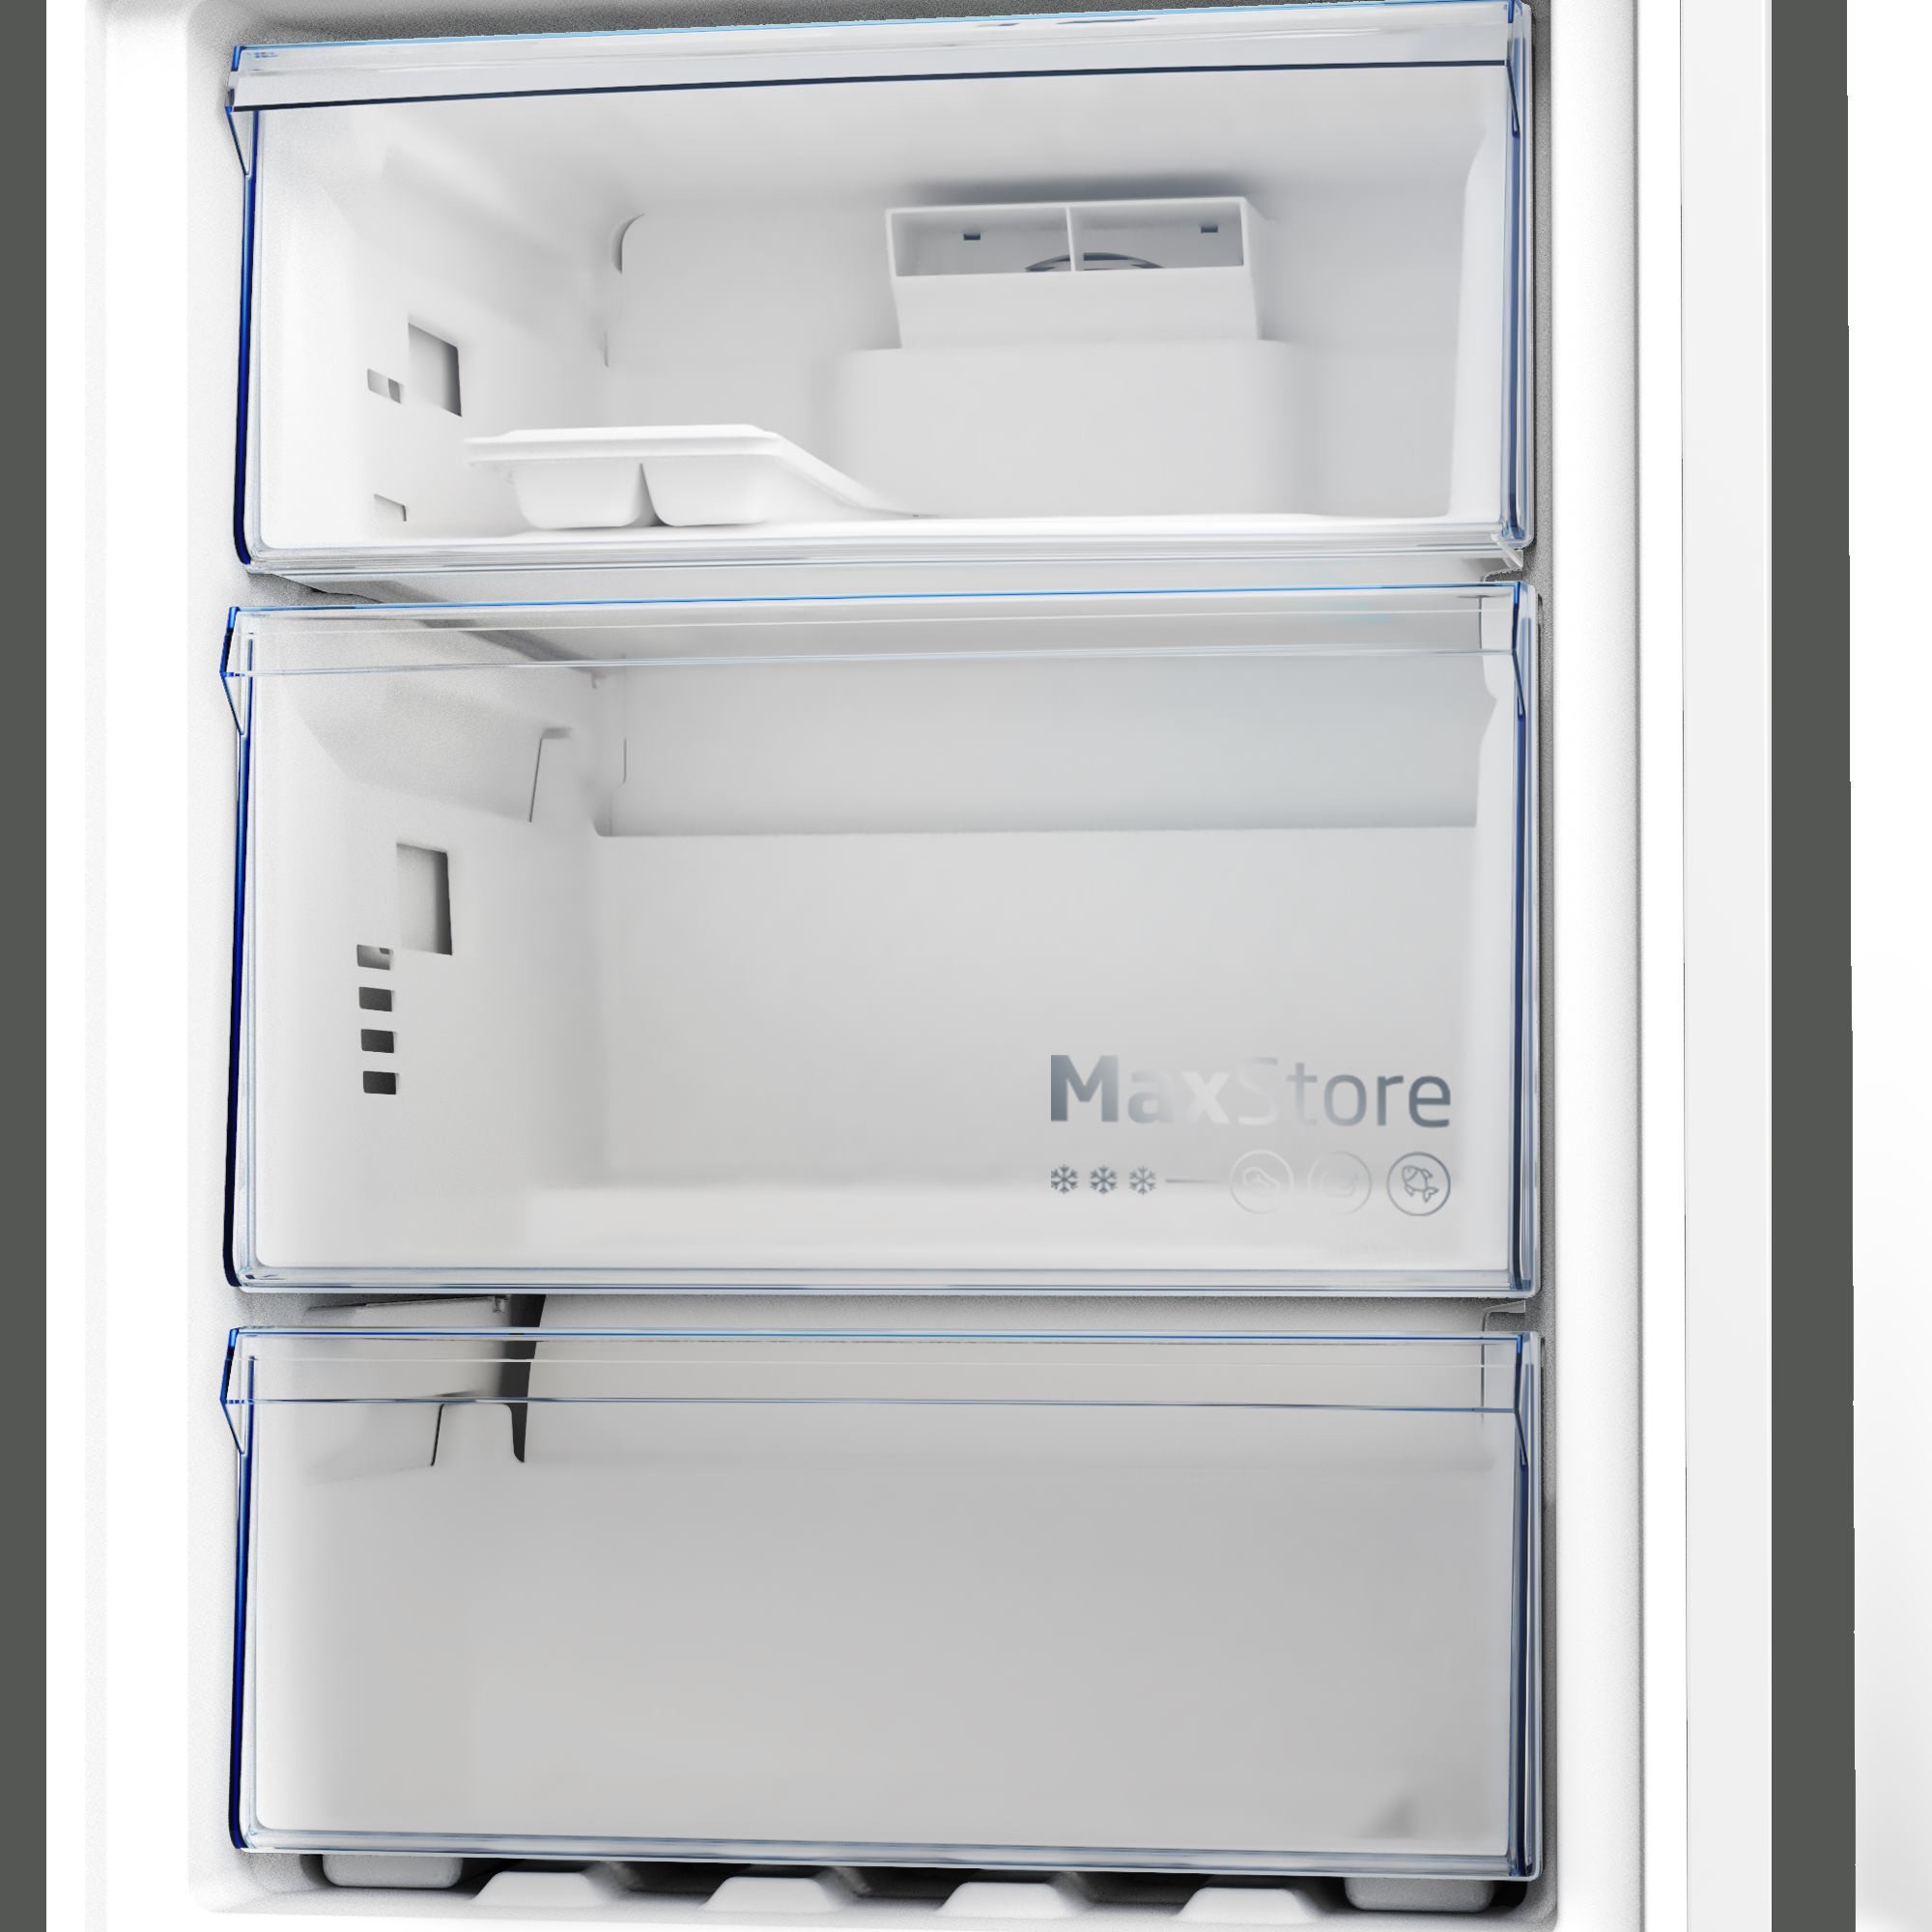 Холодильники Beko B5RCNA 366 HG серый